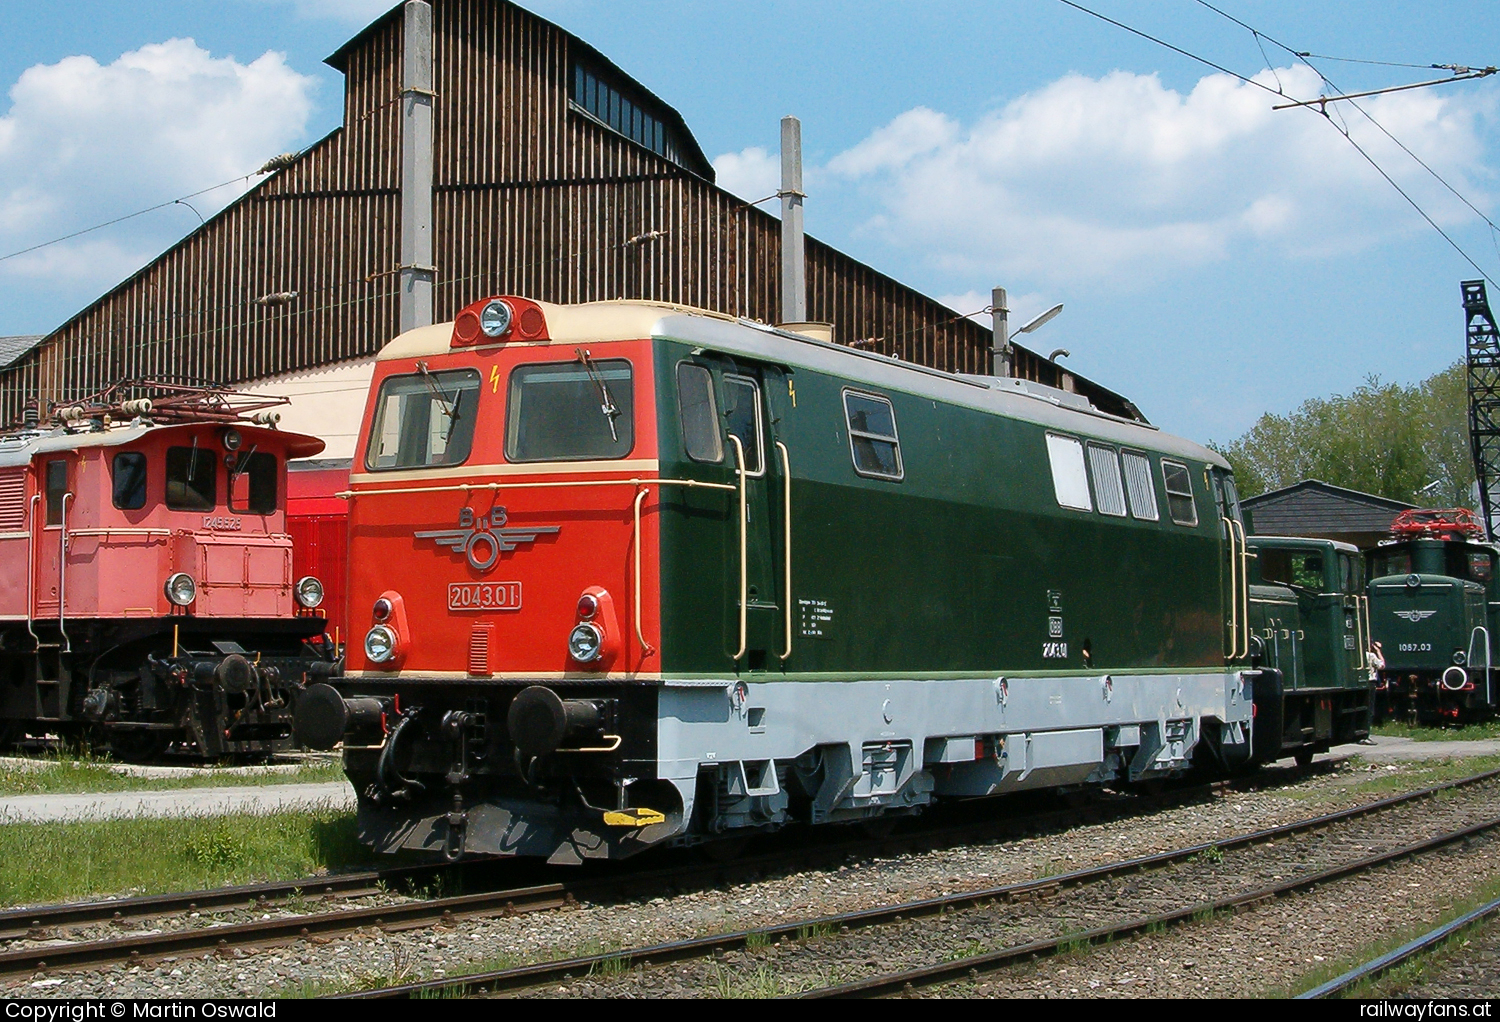 EM Knittelfeld 2043 01 in Knittelfeld Rudolfsbahn Bruck a.d. Mur - Tarvisio Boscoverde Railwayfans